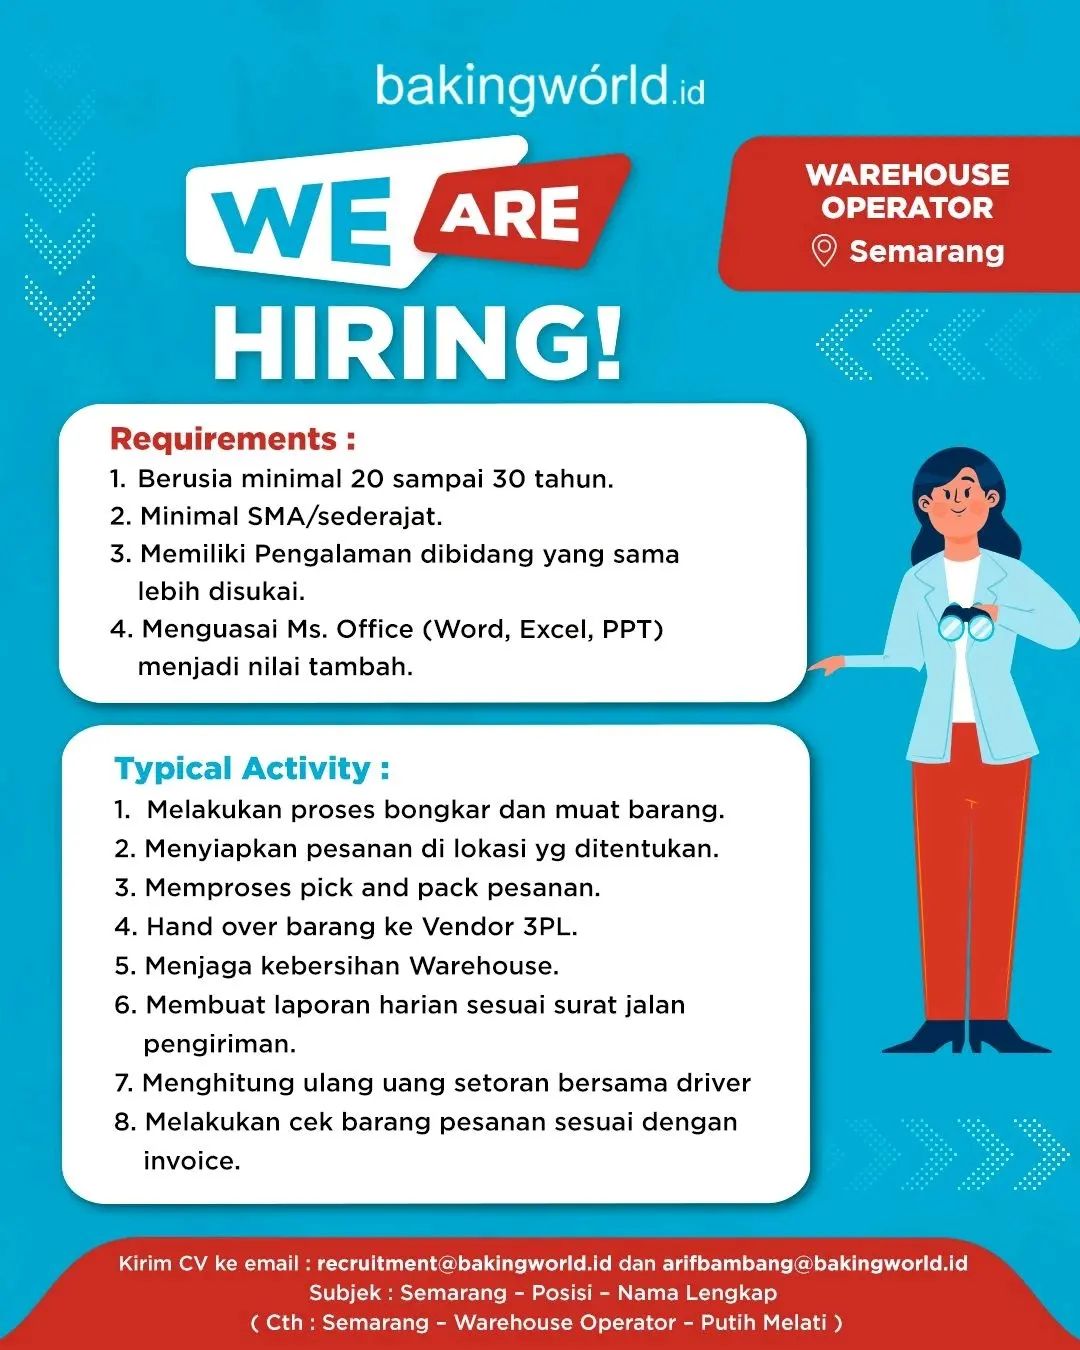 Lowongan Kerja Warehouse Operator di Bakingworld.id Semarang